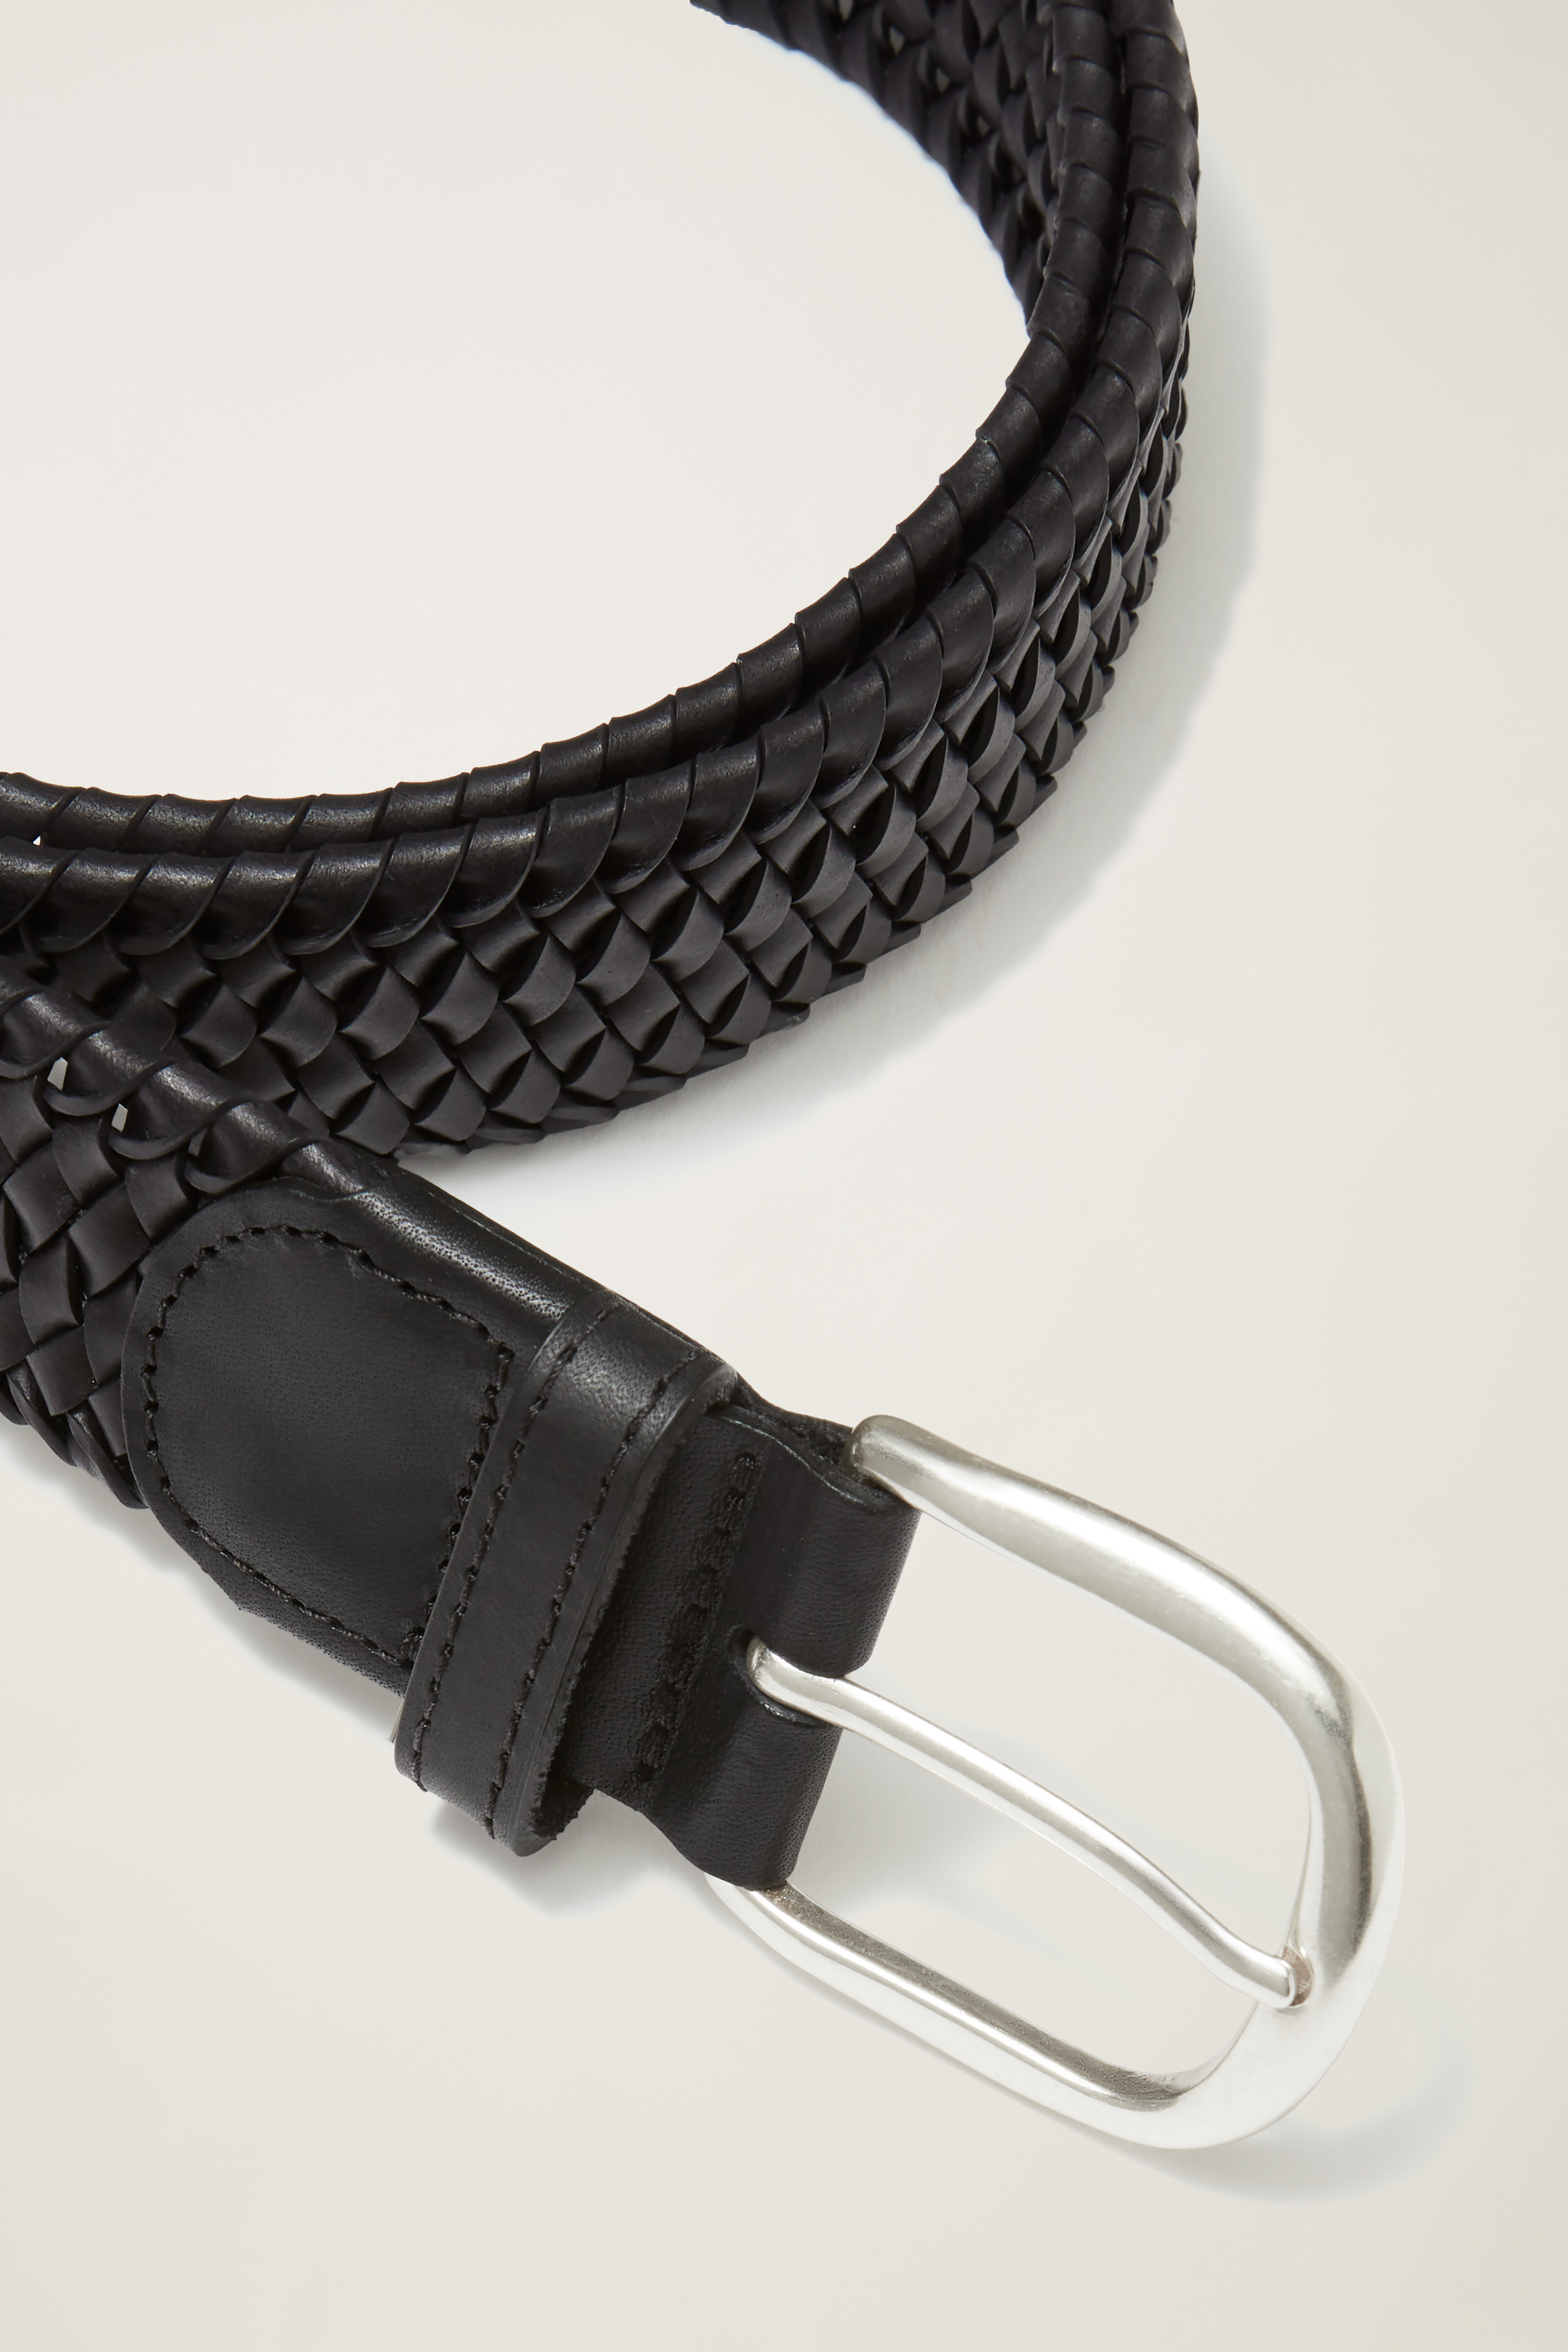 Knot Your Average Belt: Shop Bonobos' Braided Leather Belt